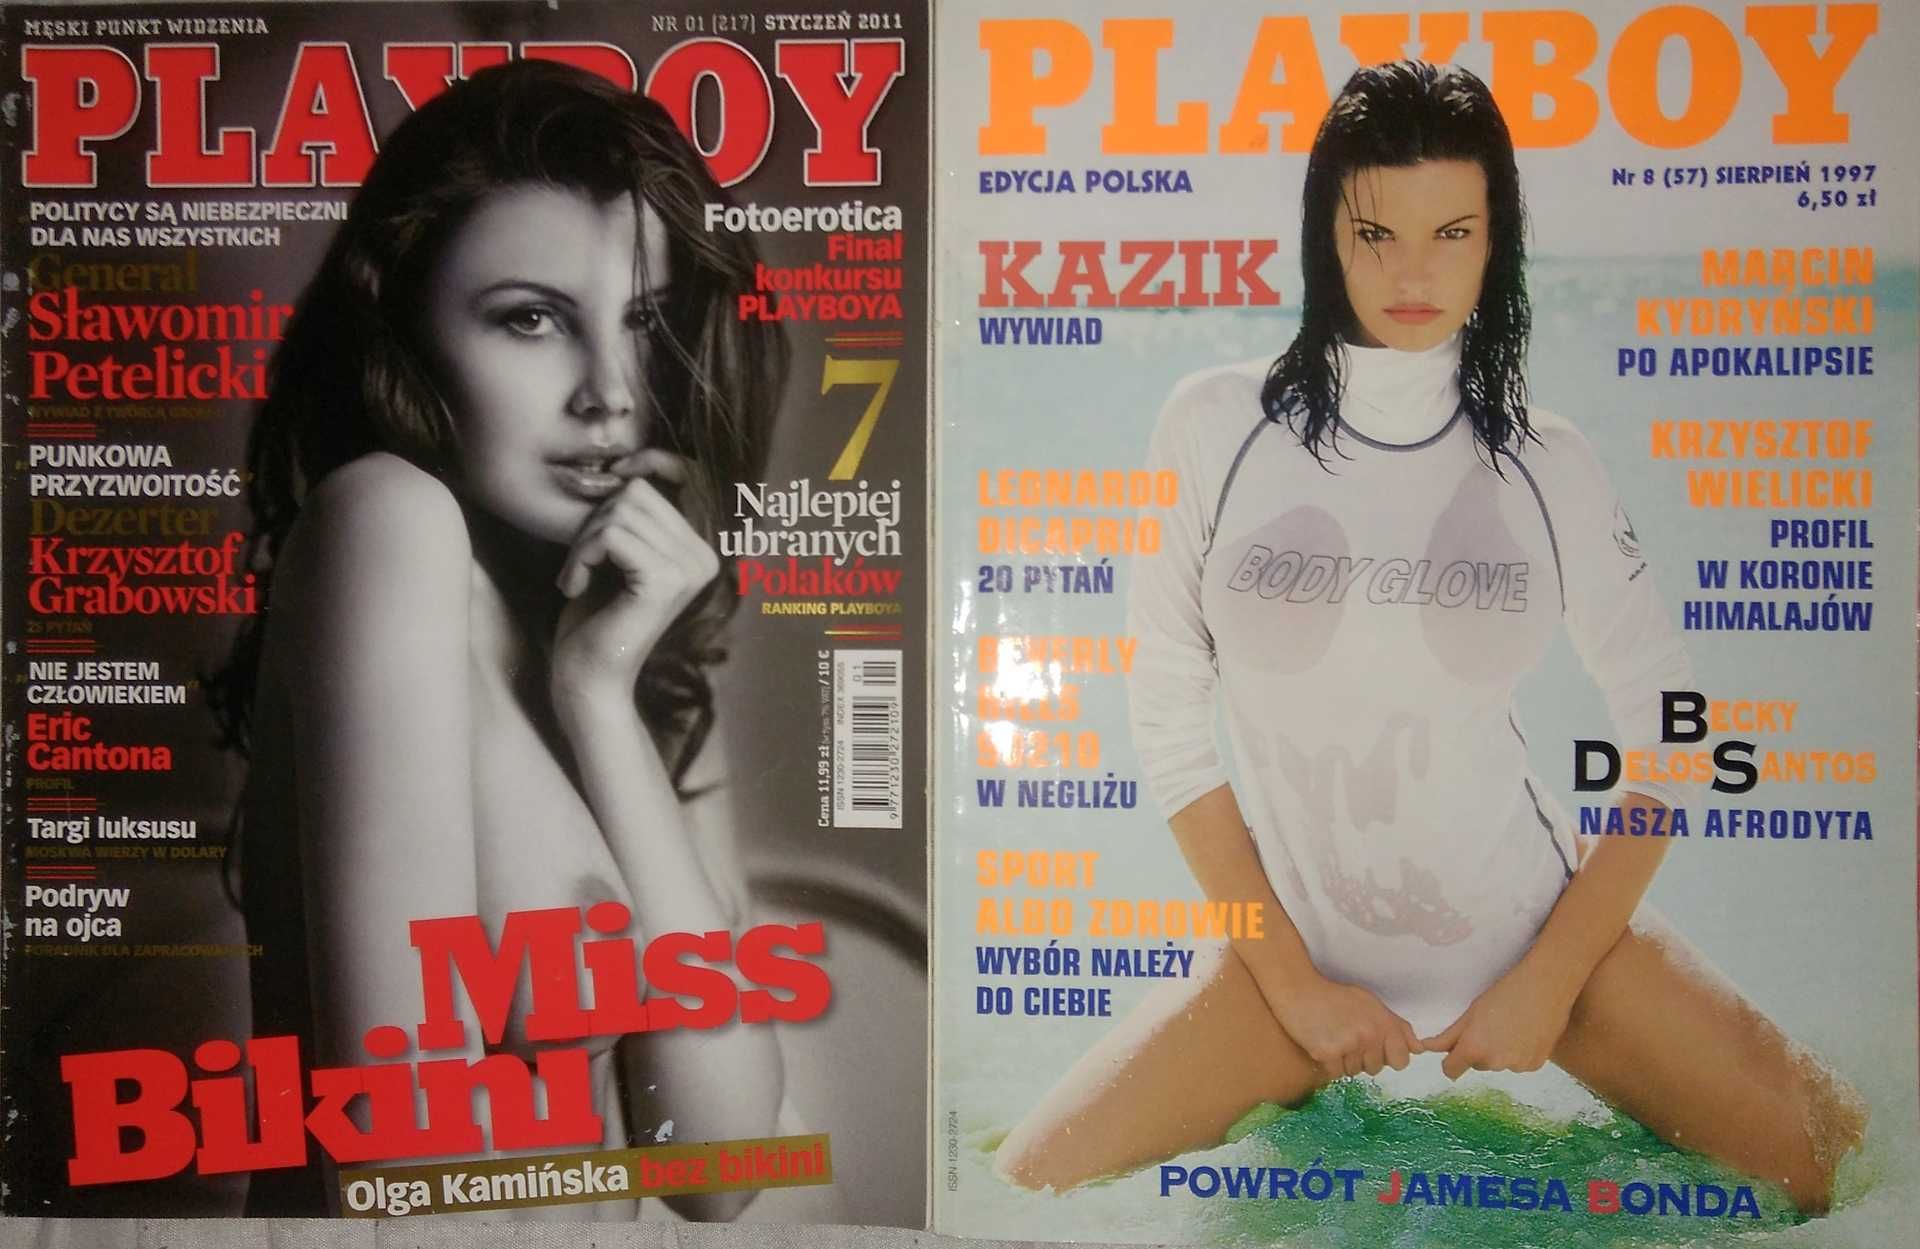 Kazik Dezerter Playboy Krzysztof Grabowski Staszewski  KULT 57  217